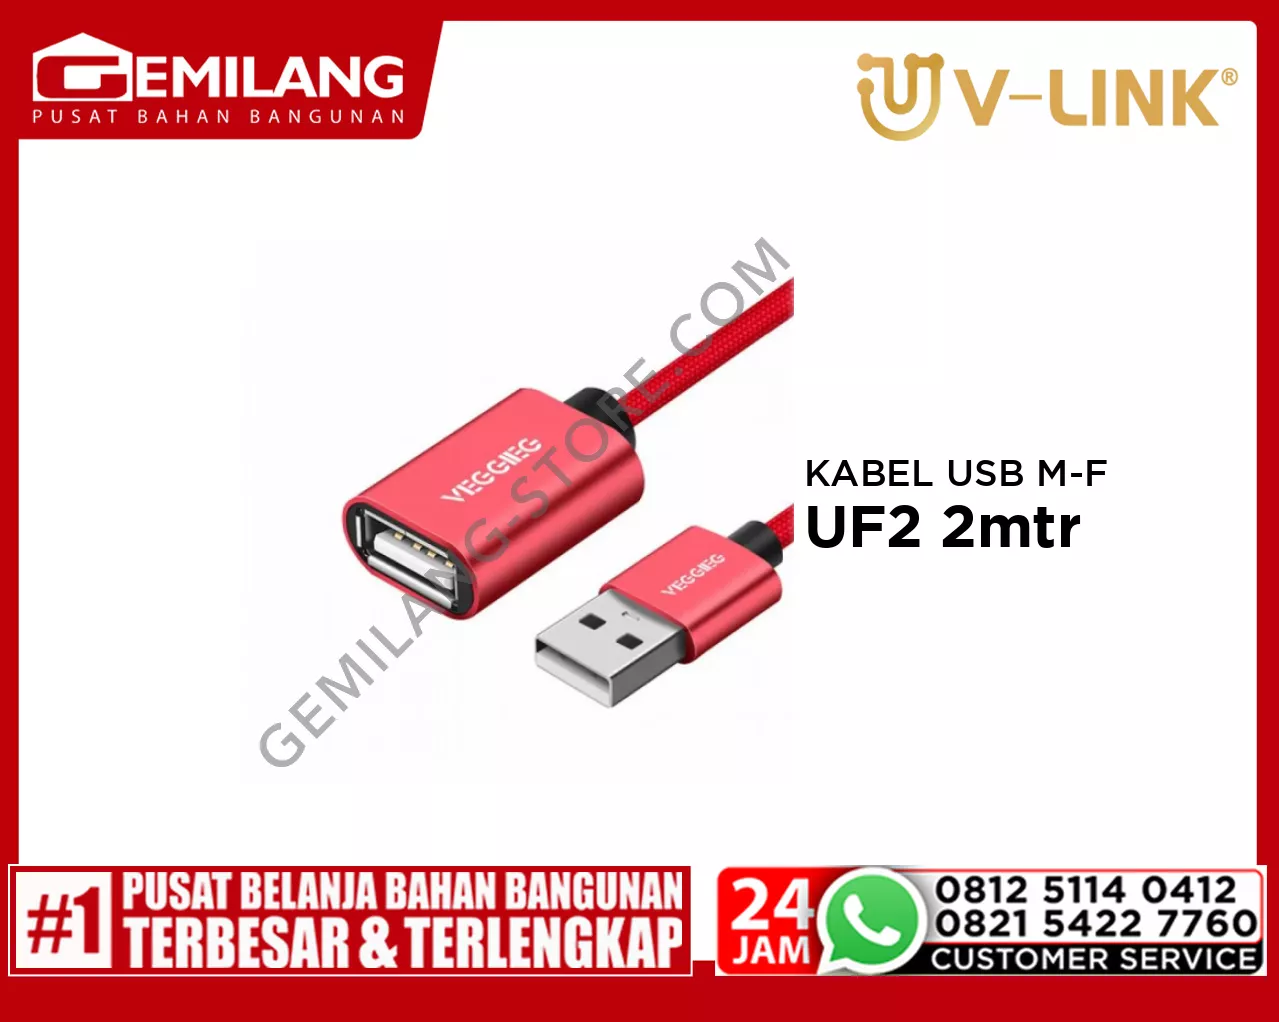 V-LINK KABEL USB MALE TO FEMALE VEGGIEG UF2 2mtr